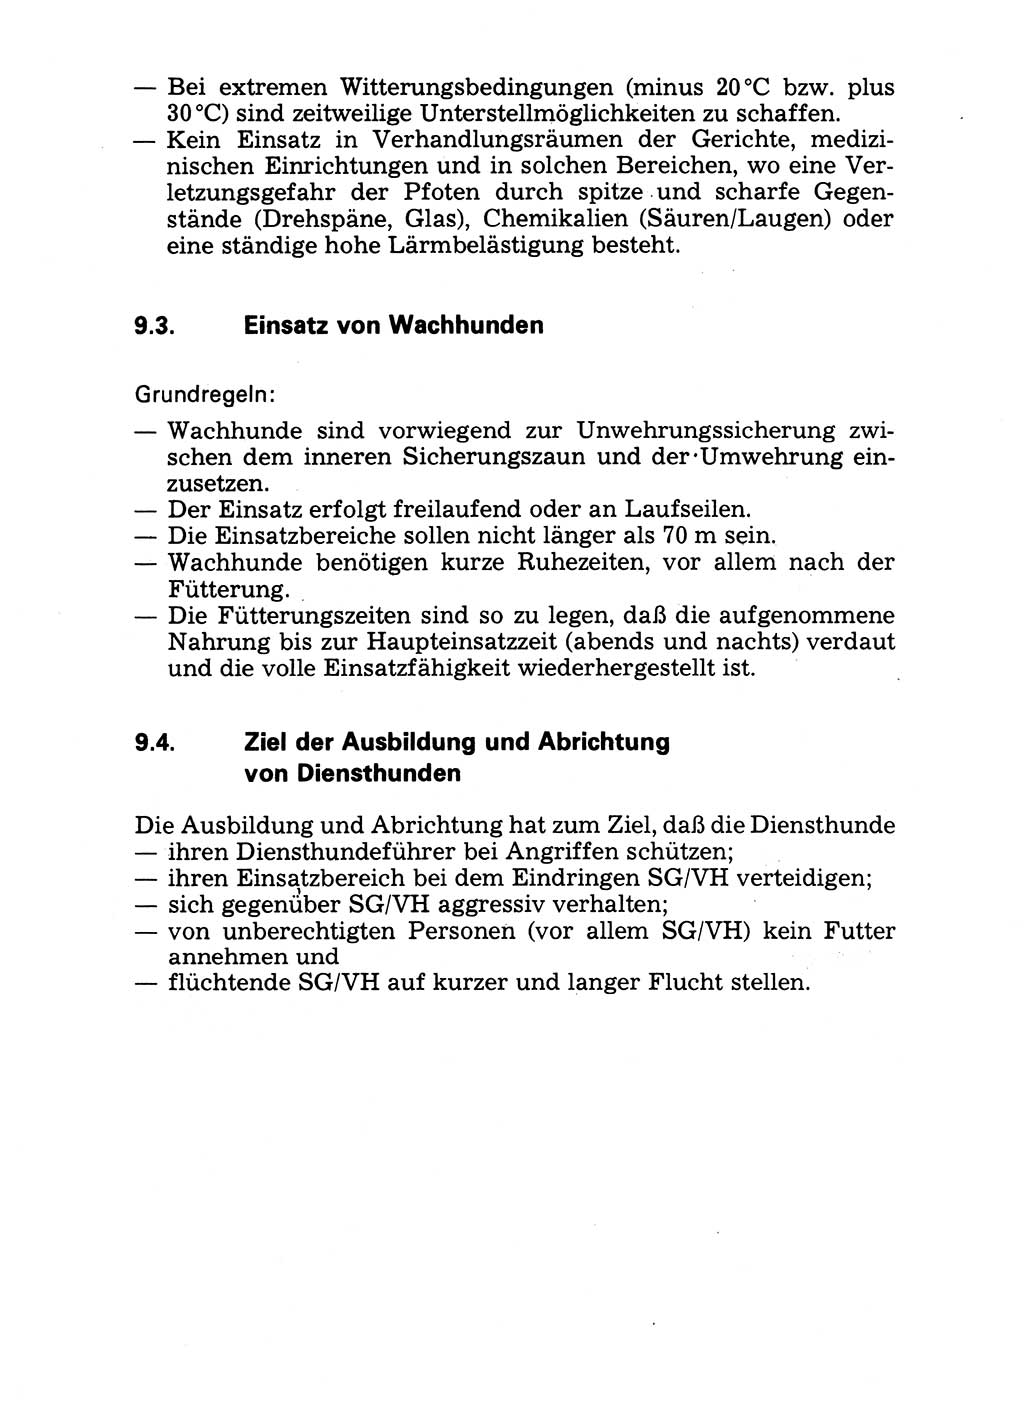 Handbuch für operative Dienste, Abteilung Strafvollzug (SV) [Ministerium des Innern (MdI) Deutsche Demokratische Republik (DDR)] 1981, Seite 135 (Hb. op. D. Abt. SV MdI DDR 1981, S. 135)